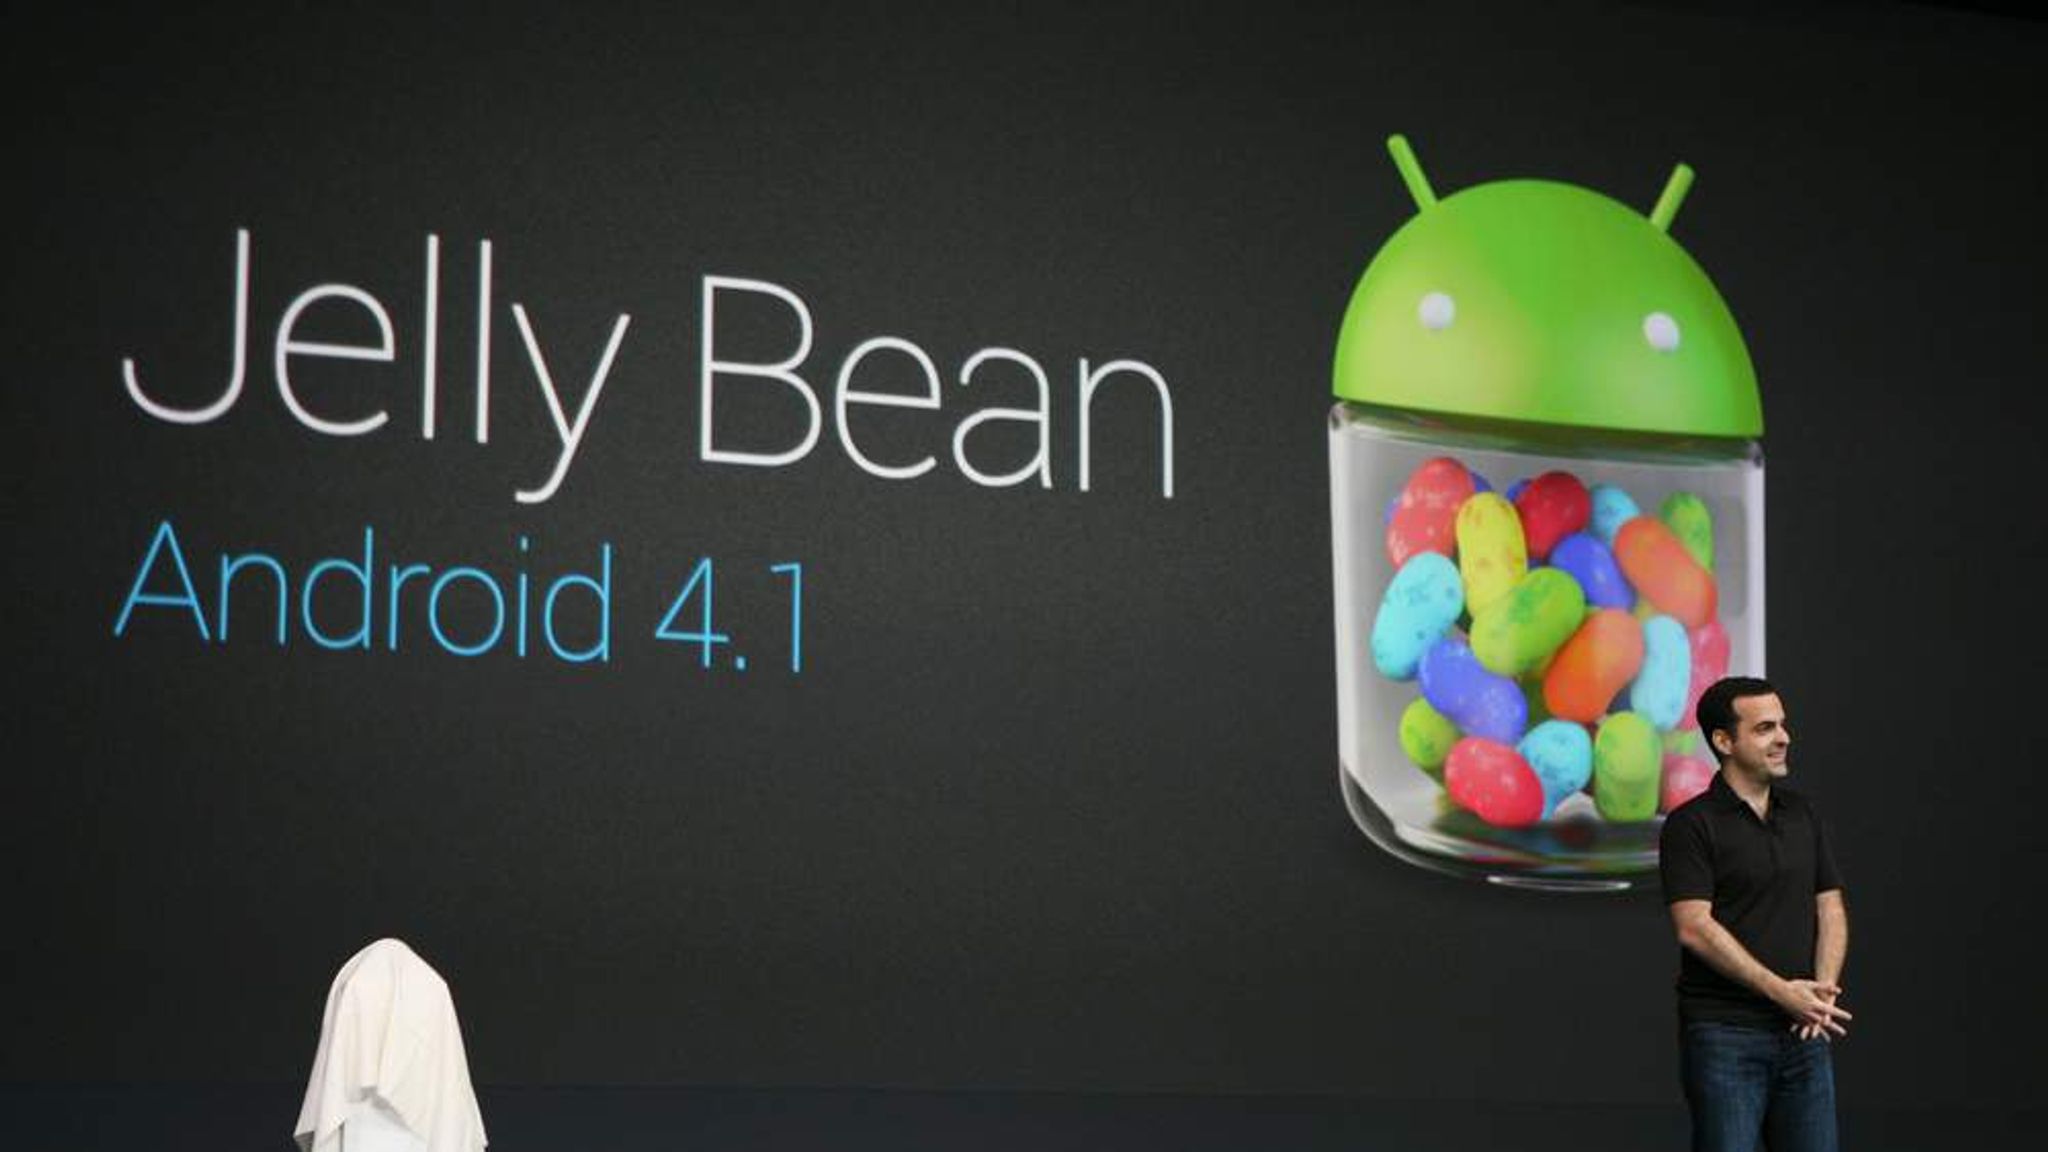 Jelly android. Android Jelly Bean. Android 4.1 Jelly Bean. Андроид Джелли Бин пасхалка. Android Jelly Bean Wallpapers.